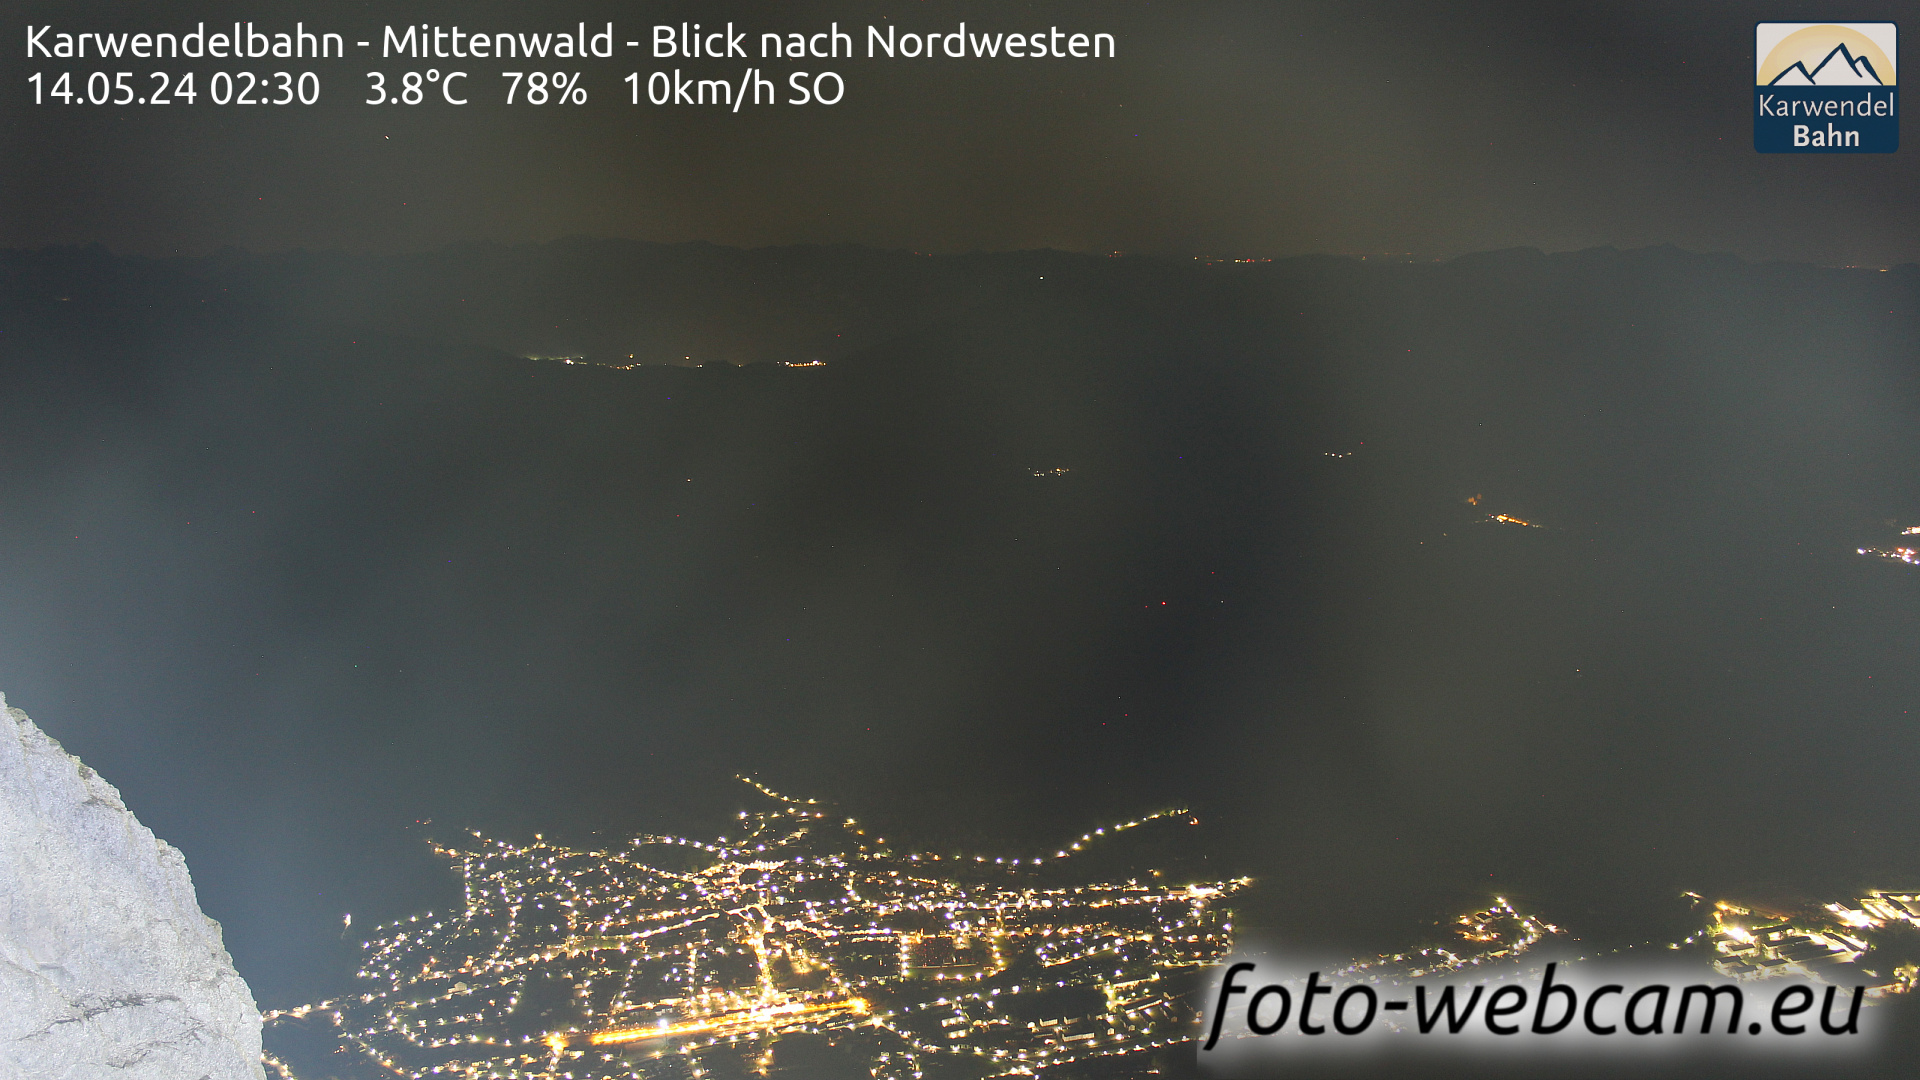 Mittenwald Wed. 02:46